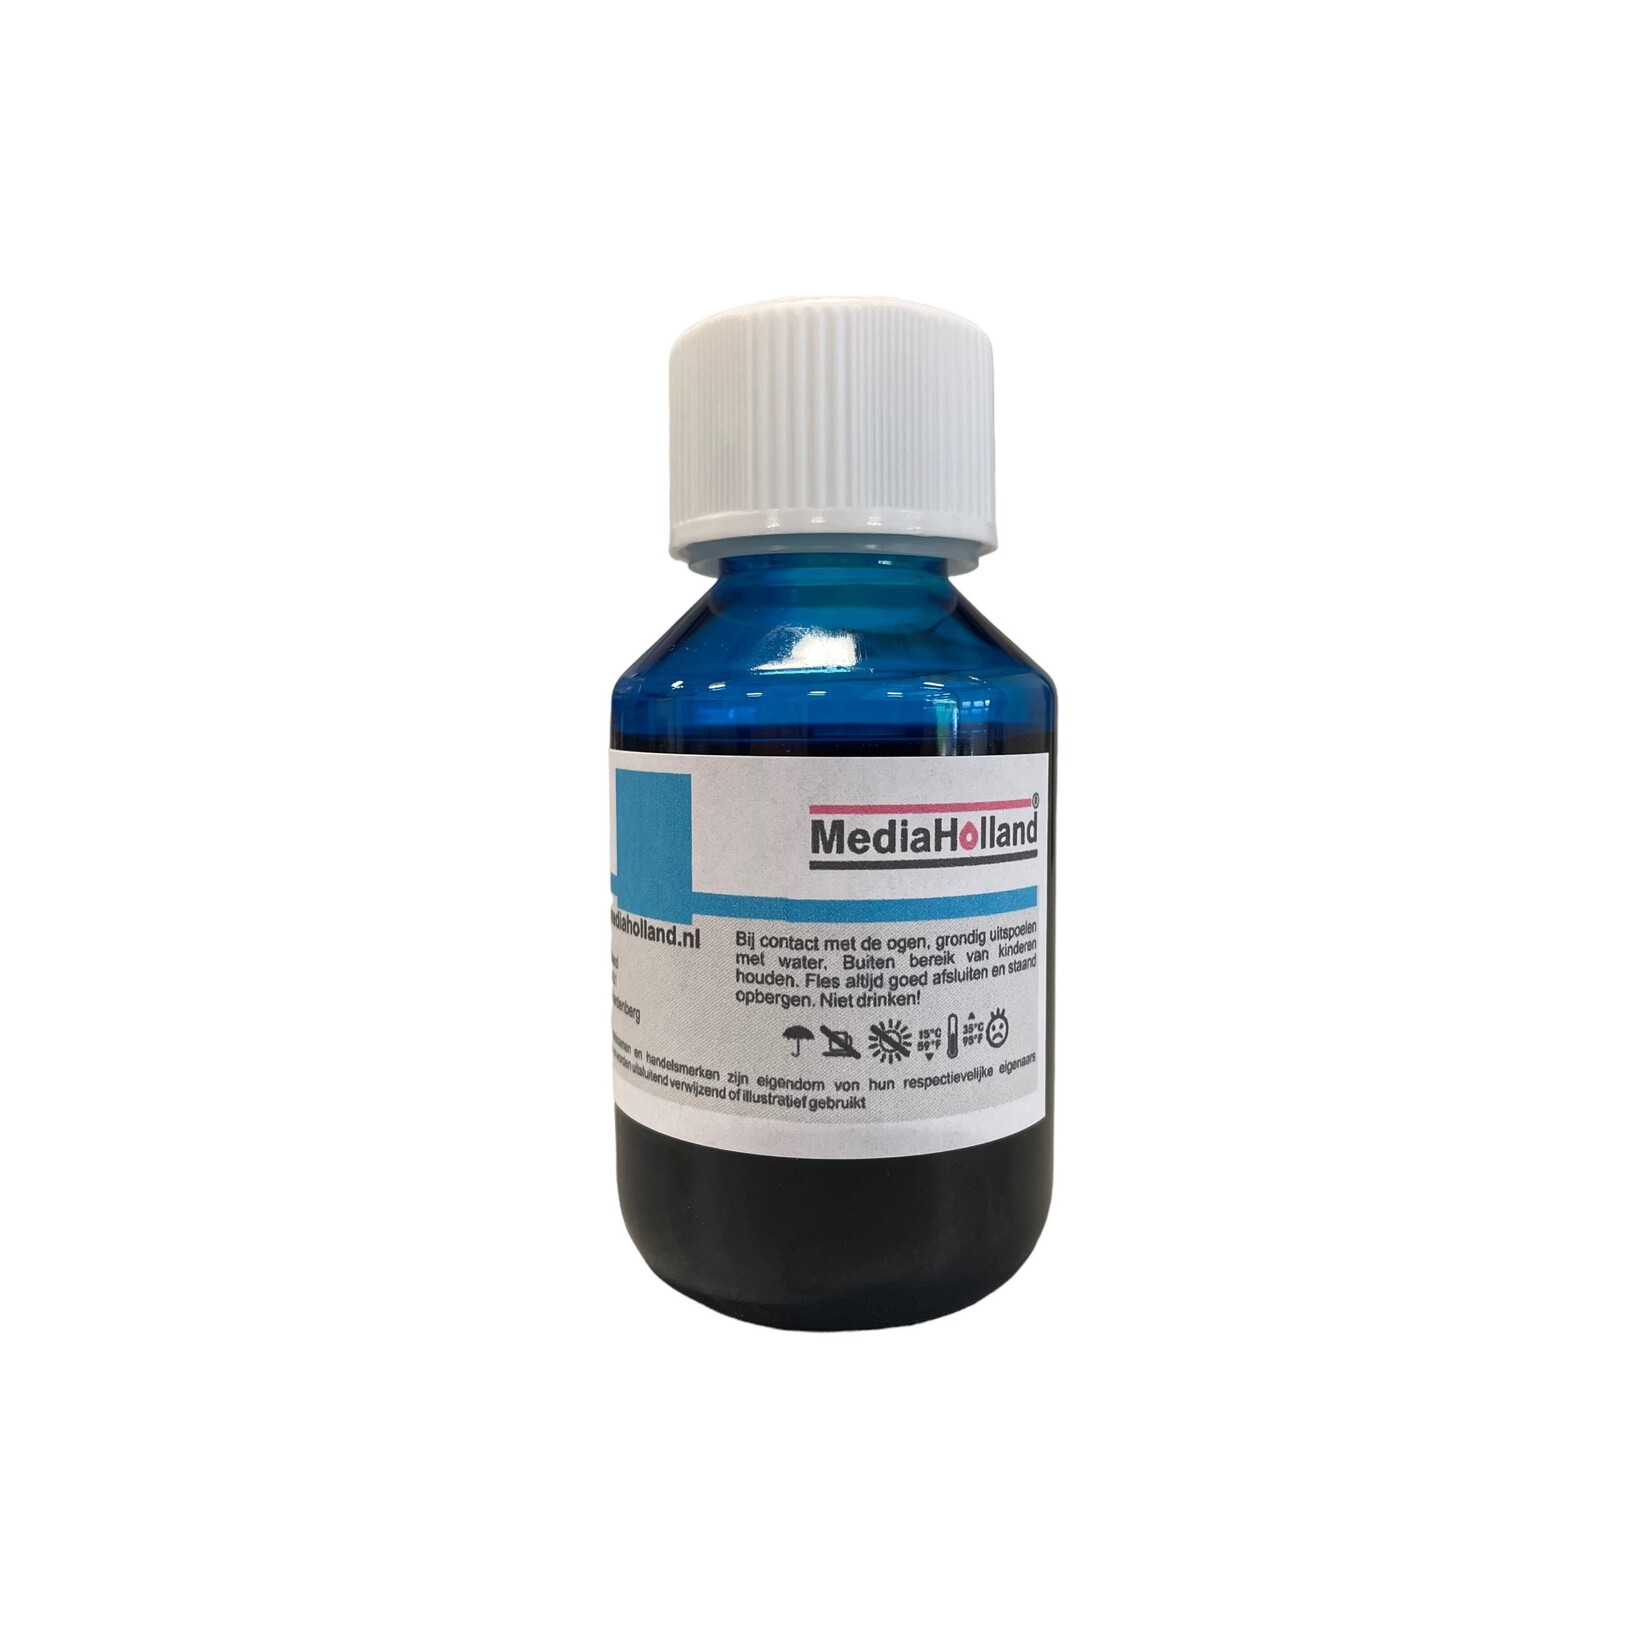 MediaHolland® Cyaan Pigment inkt speciaal voor deLC3217, LC3219, LC3237 en LC3239 inktpatronen van Brother